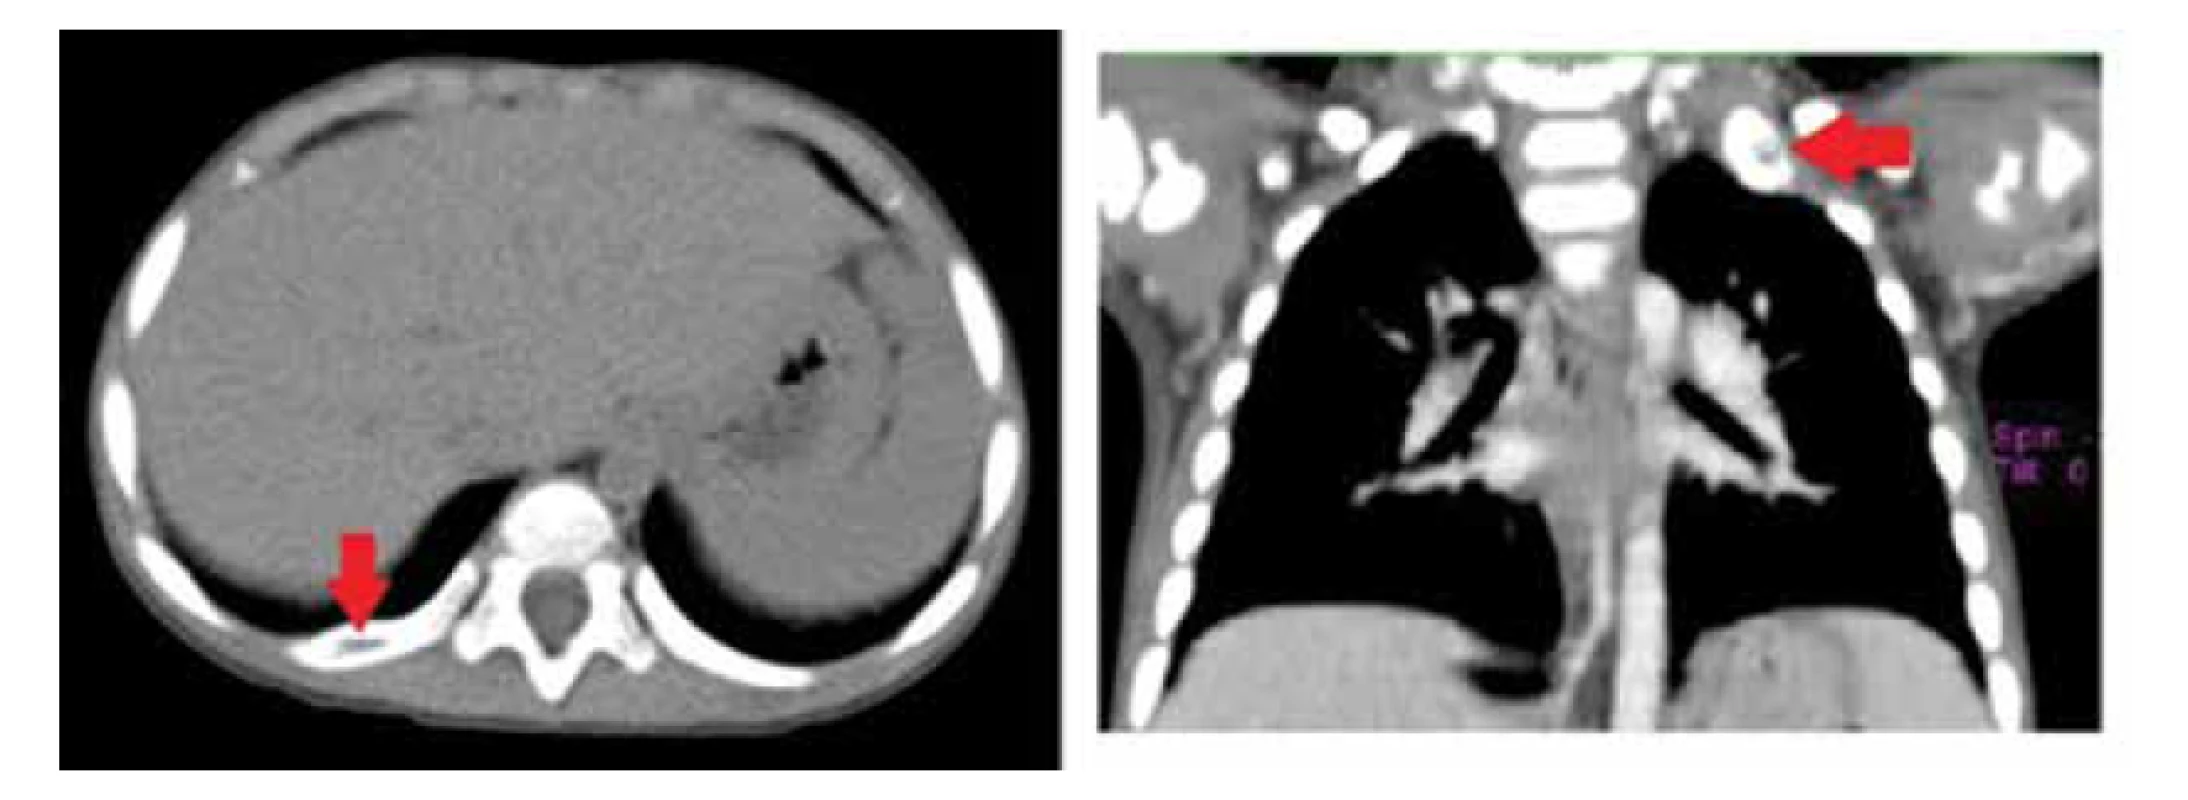 CT nález osteolytických ložísk v rebrách (zdroj: archív autorov).<br>
Fig. 5. Osteolytic lesions in the ribs on CT scan (source: authors’ archive).